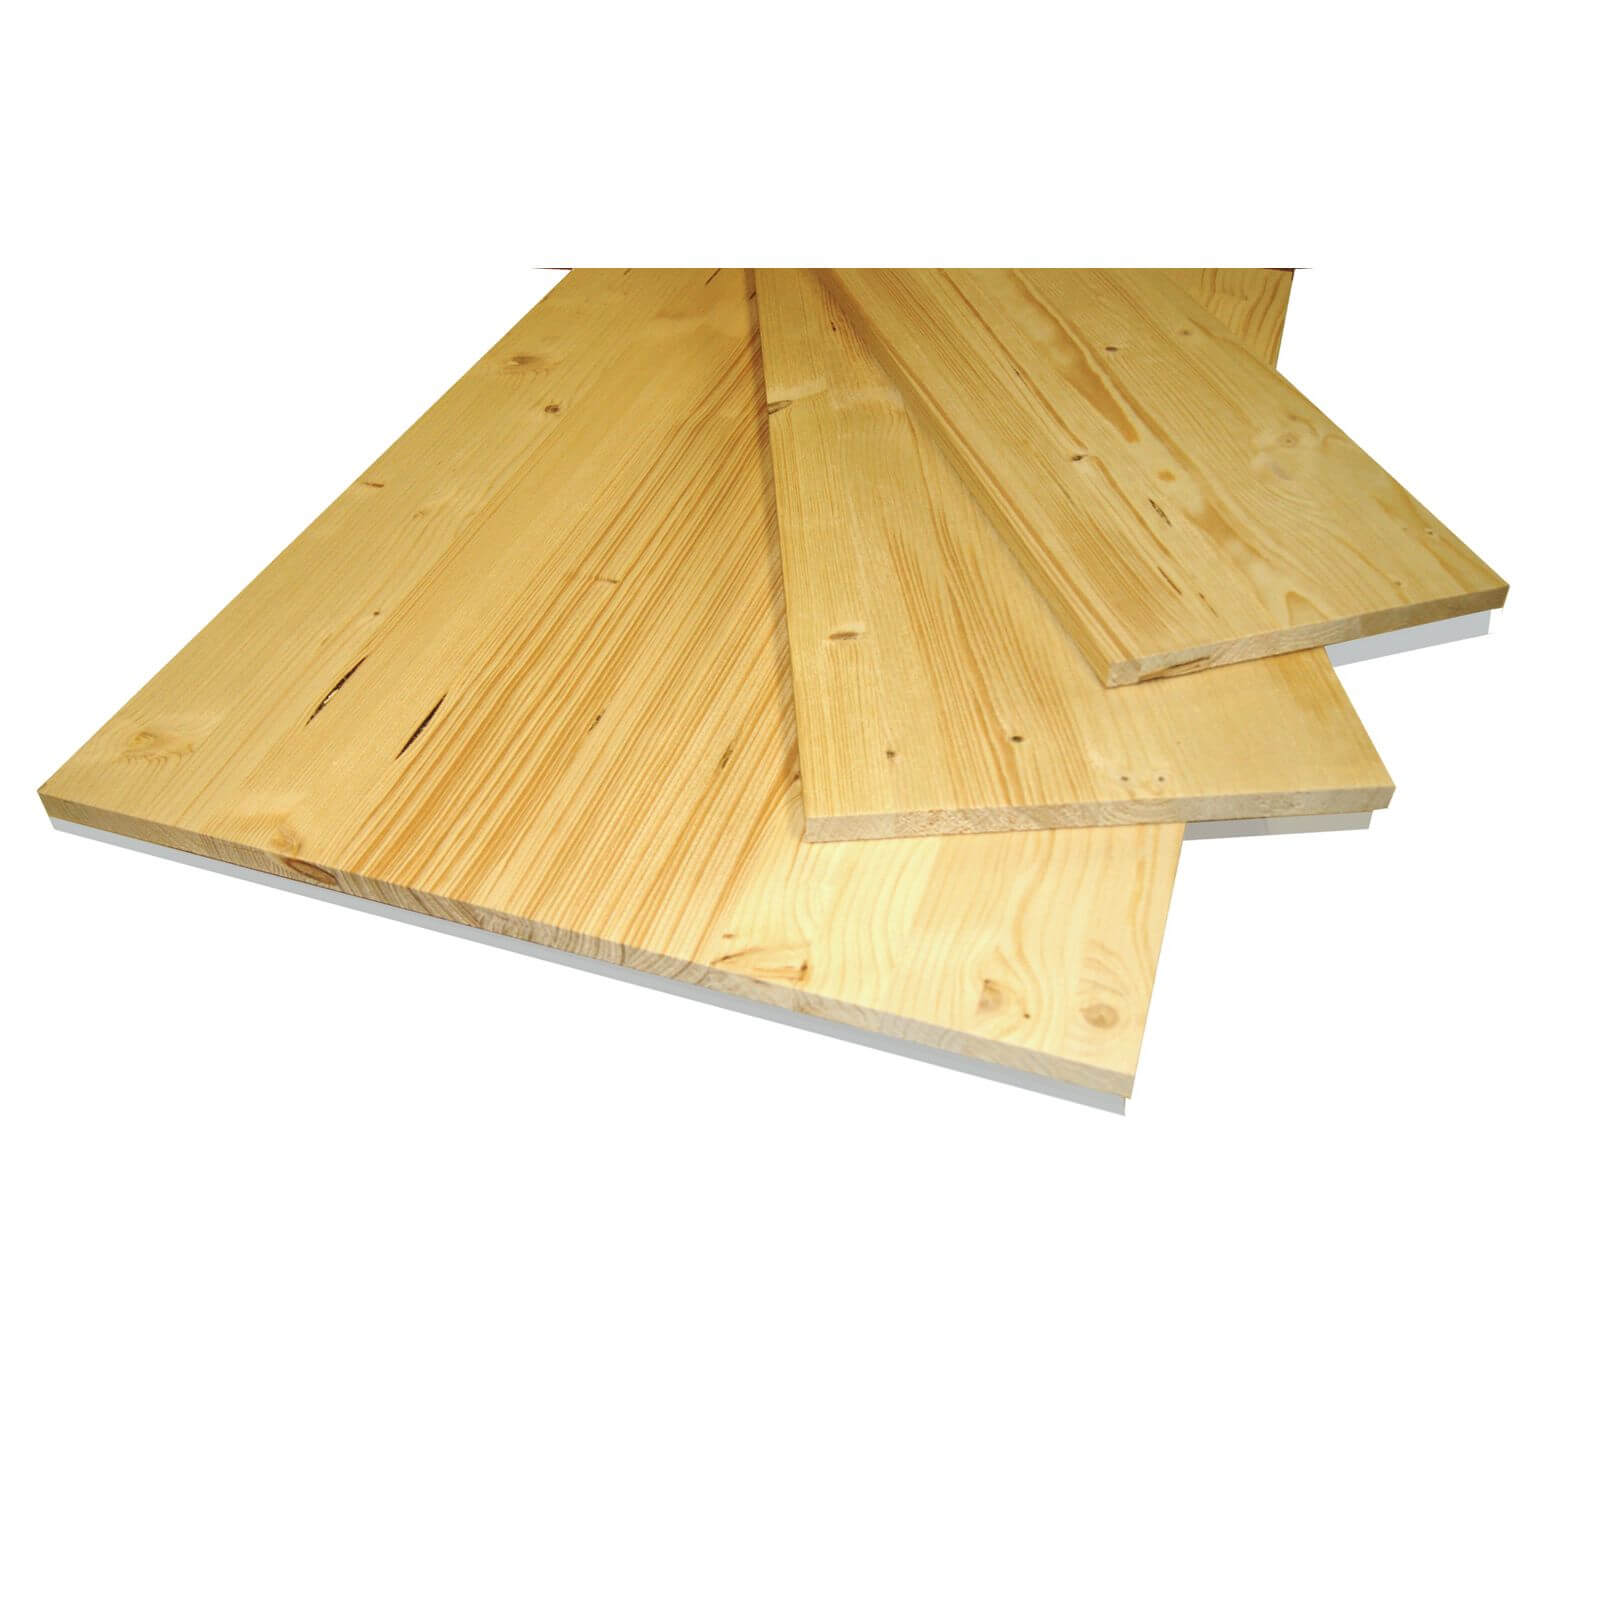 Metsa Wood Solid Spruce Wooden Panel Board 1.75m (18 x 200 x 1750mm)